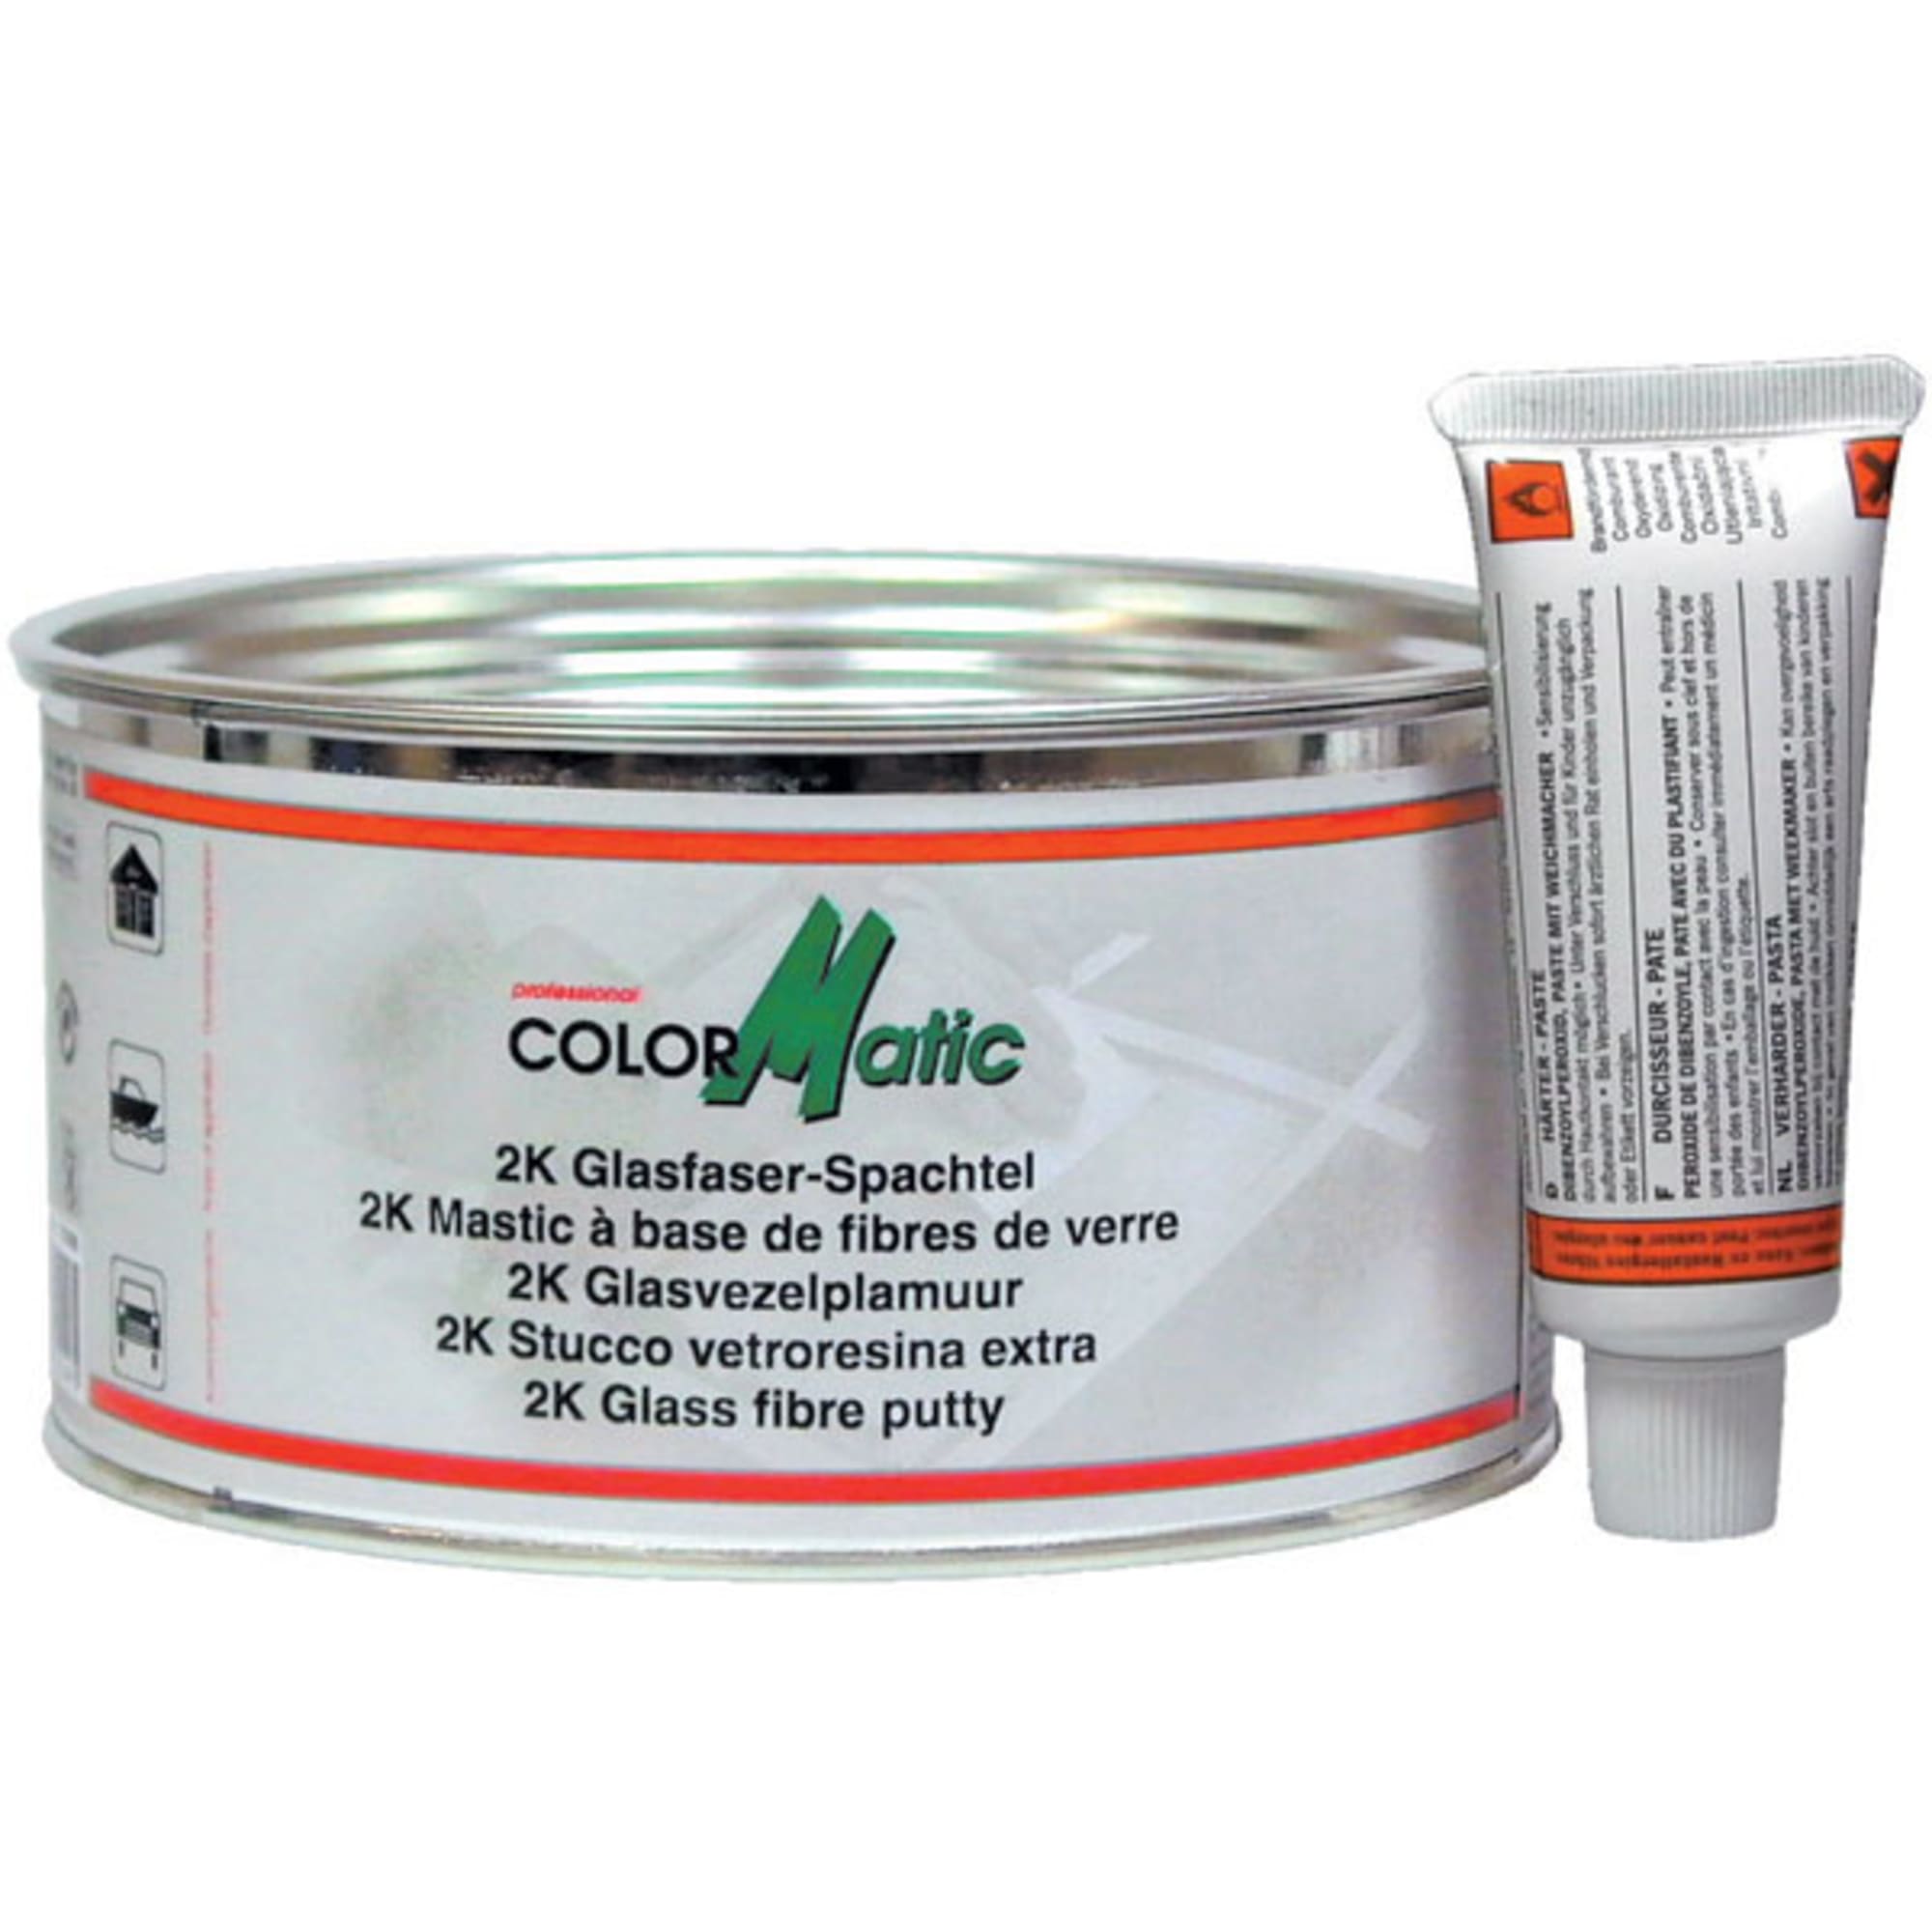 Colormatic 2K Glasfaserspachtel grau-grün, 1,6 kg